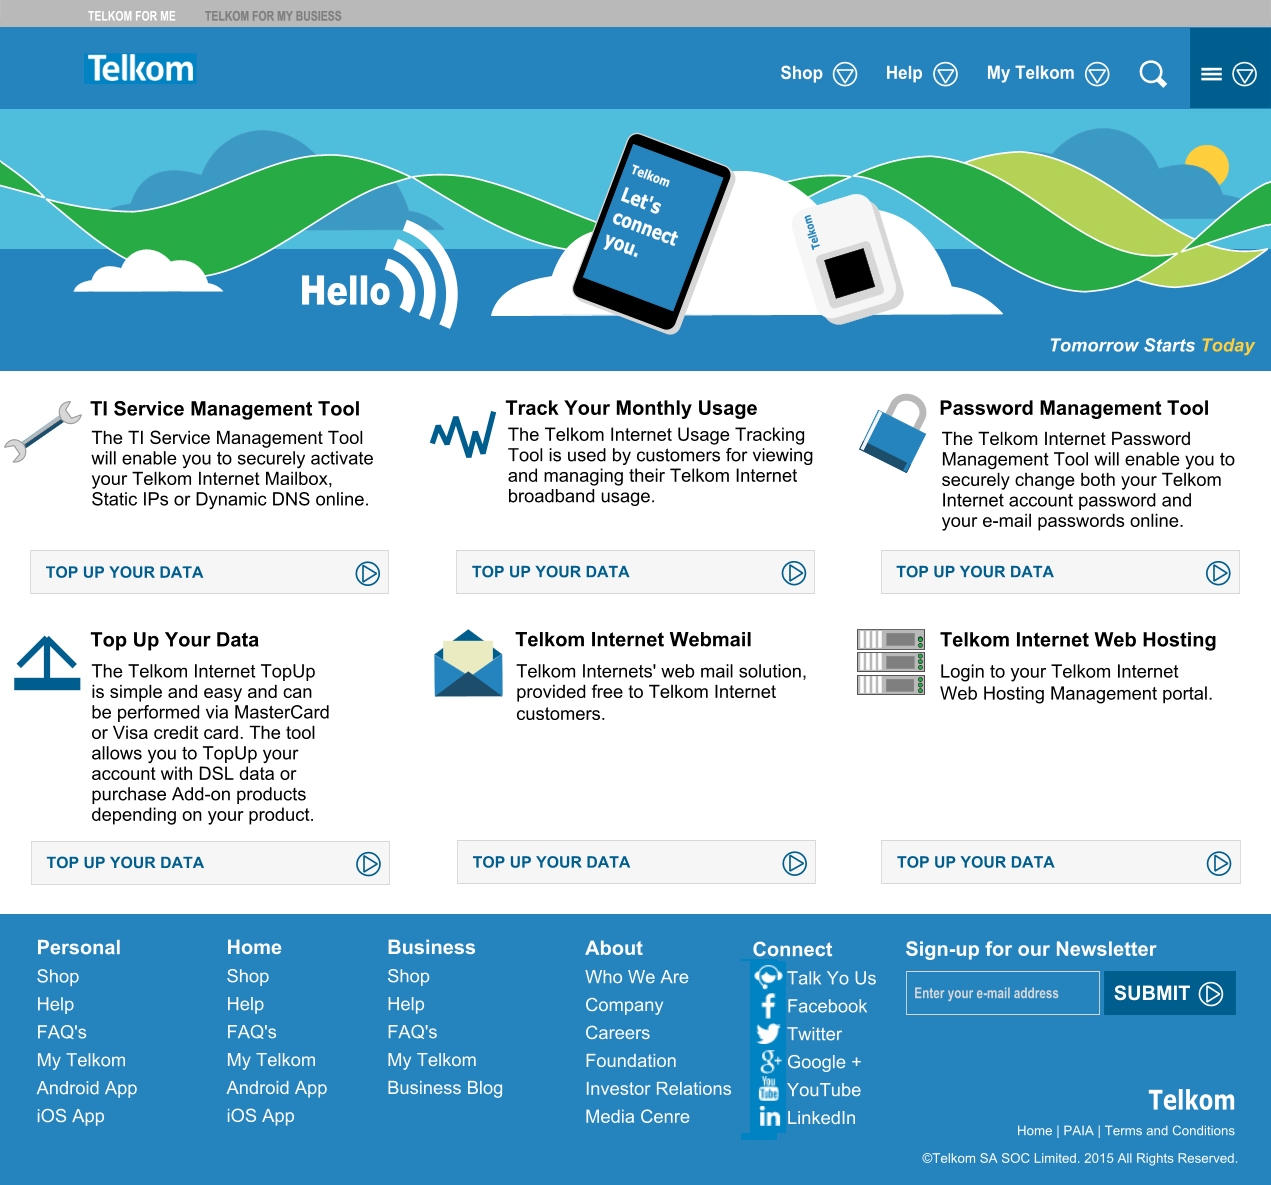 Telkom Internet based on Corporate ID